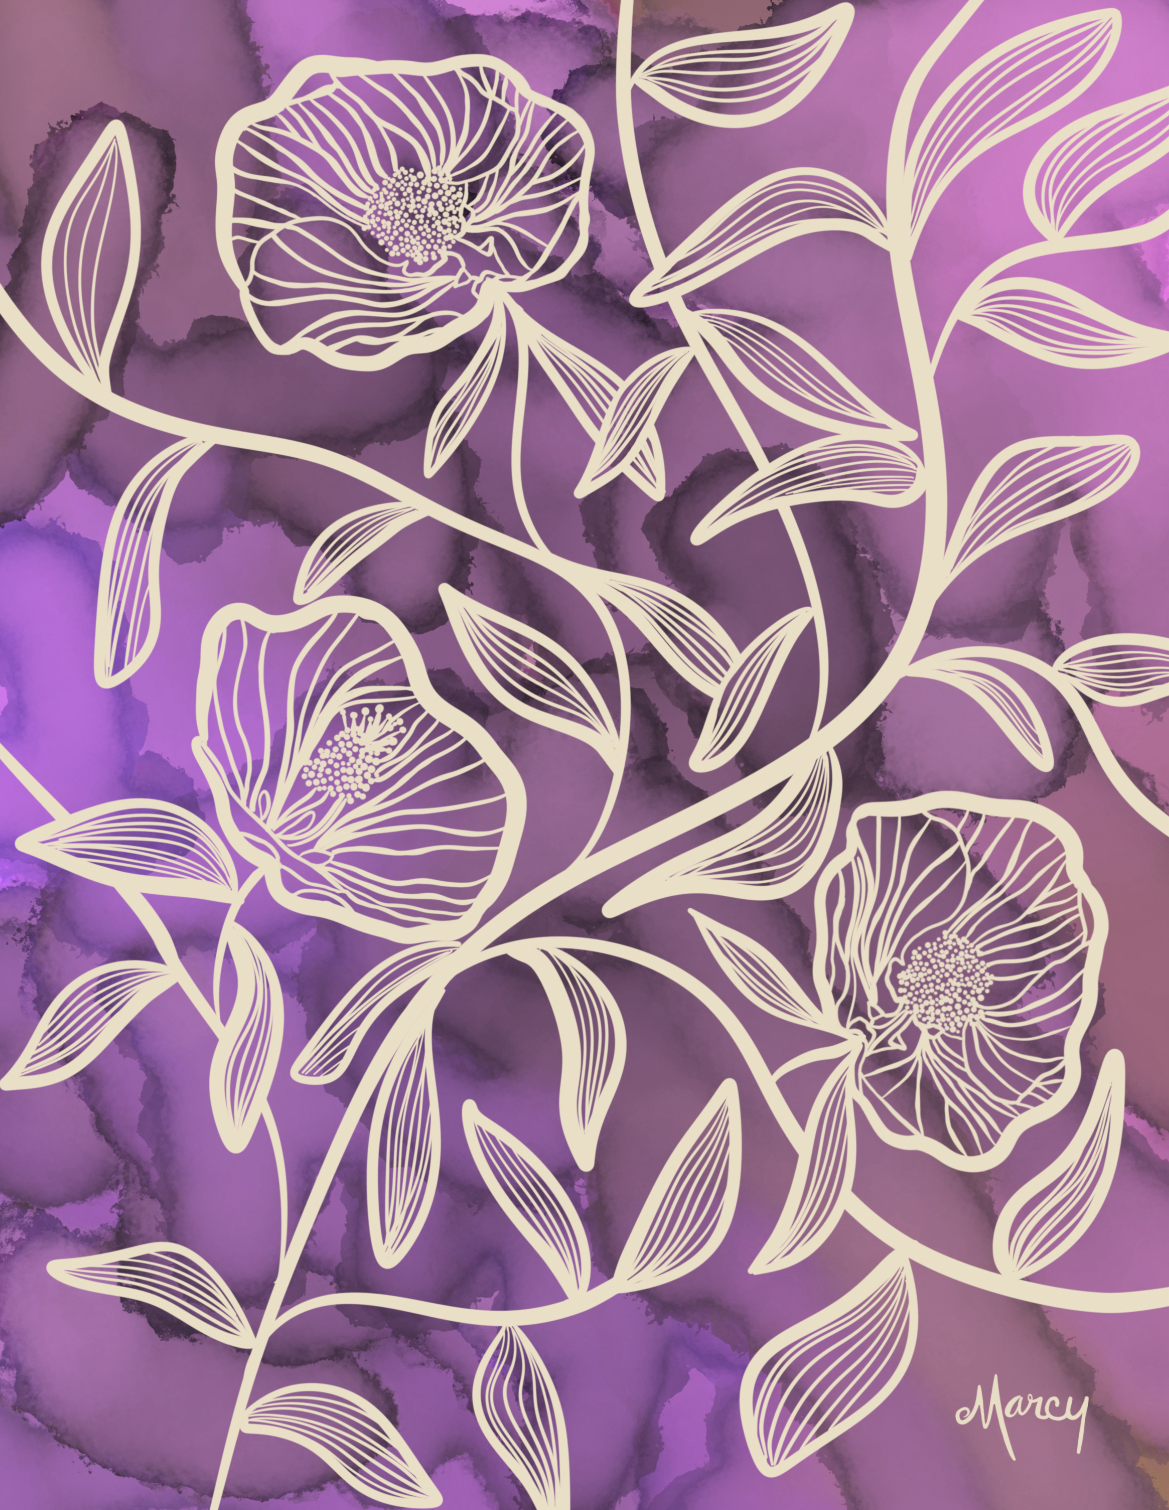 Flowering Maples on Purple Alcohol Ink Background | Digital Illustration | Digital Download